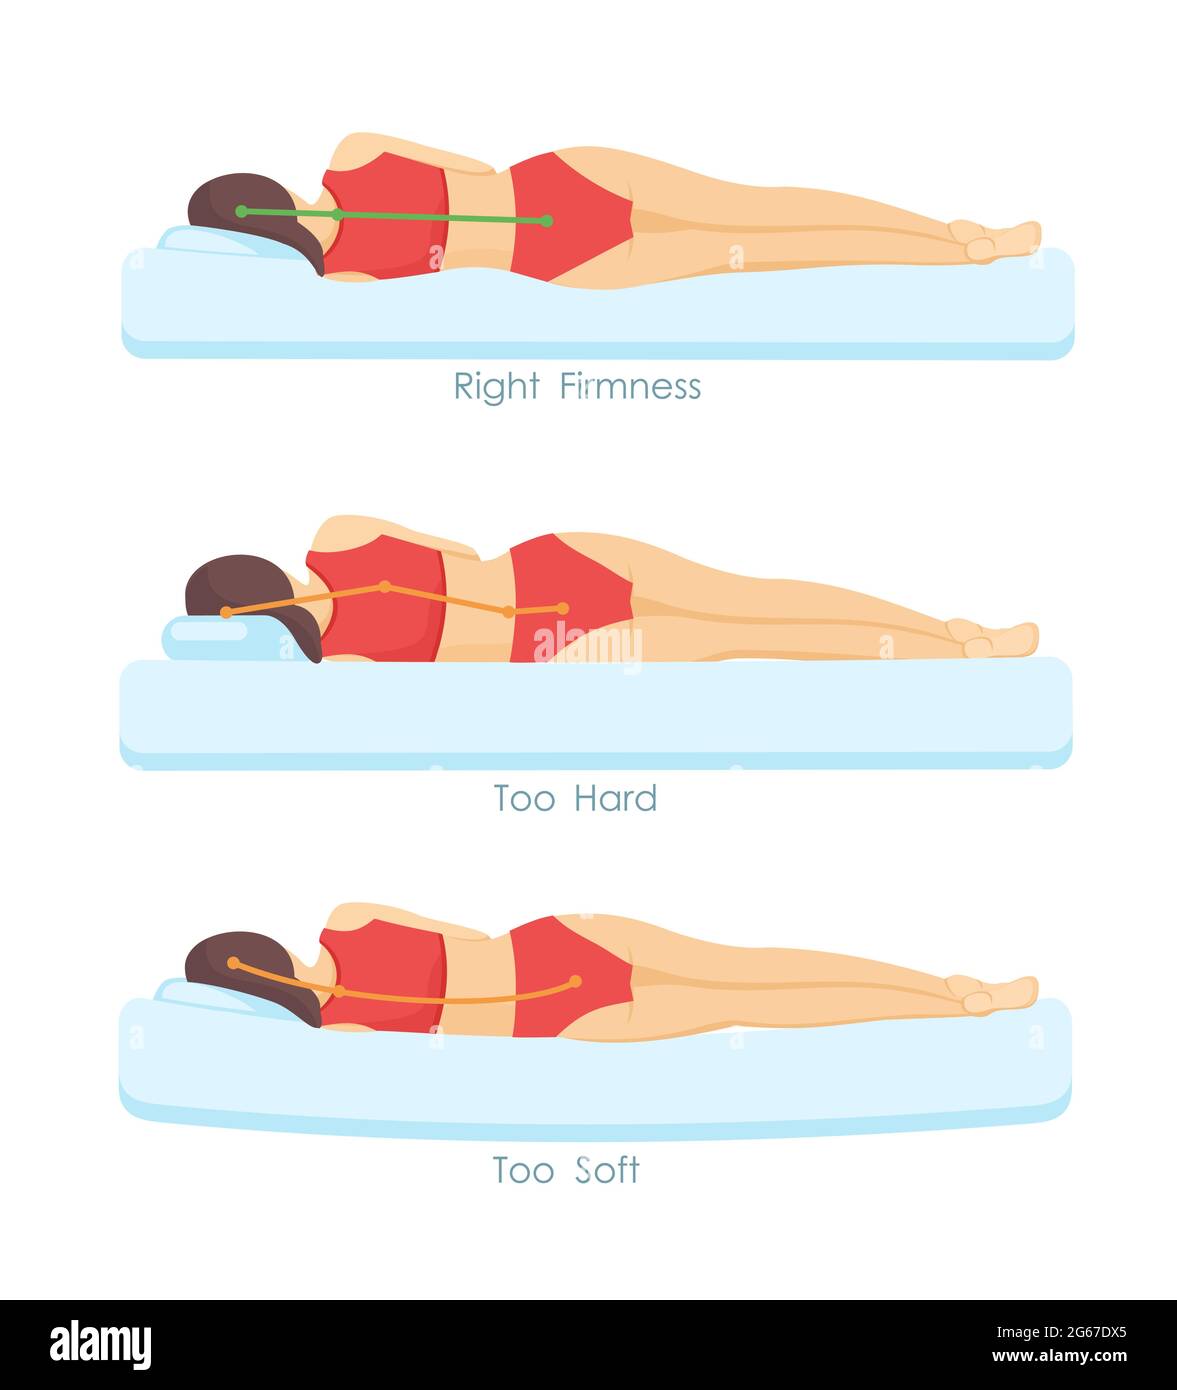 Vektor-Illustration Satz von richtigen und falschen Schlafmatratzen Positionen. Ergonomie und Körperhaltung Infografik in flachen Cartoon-Stil. Stock Vektor